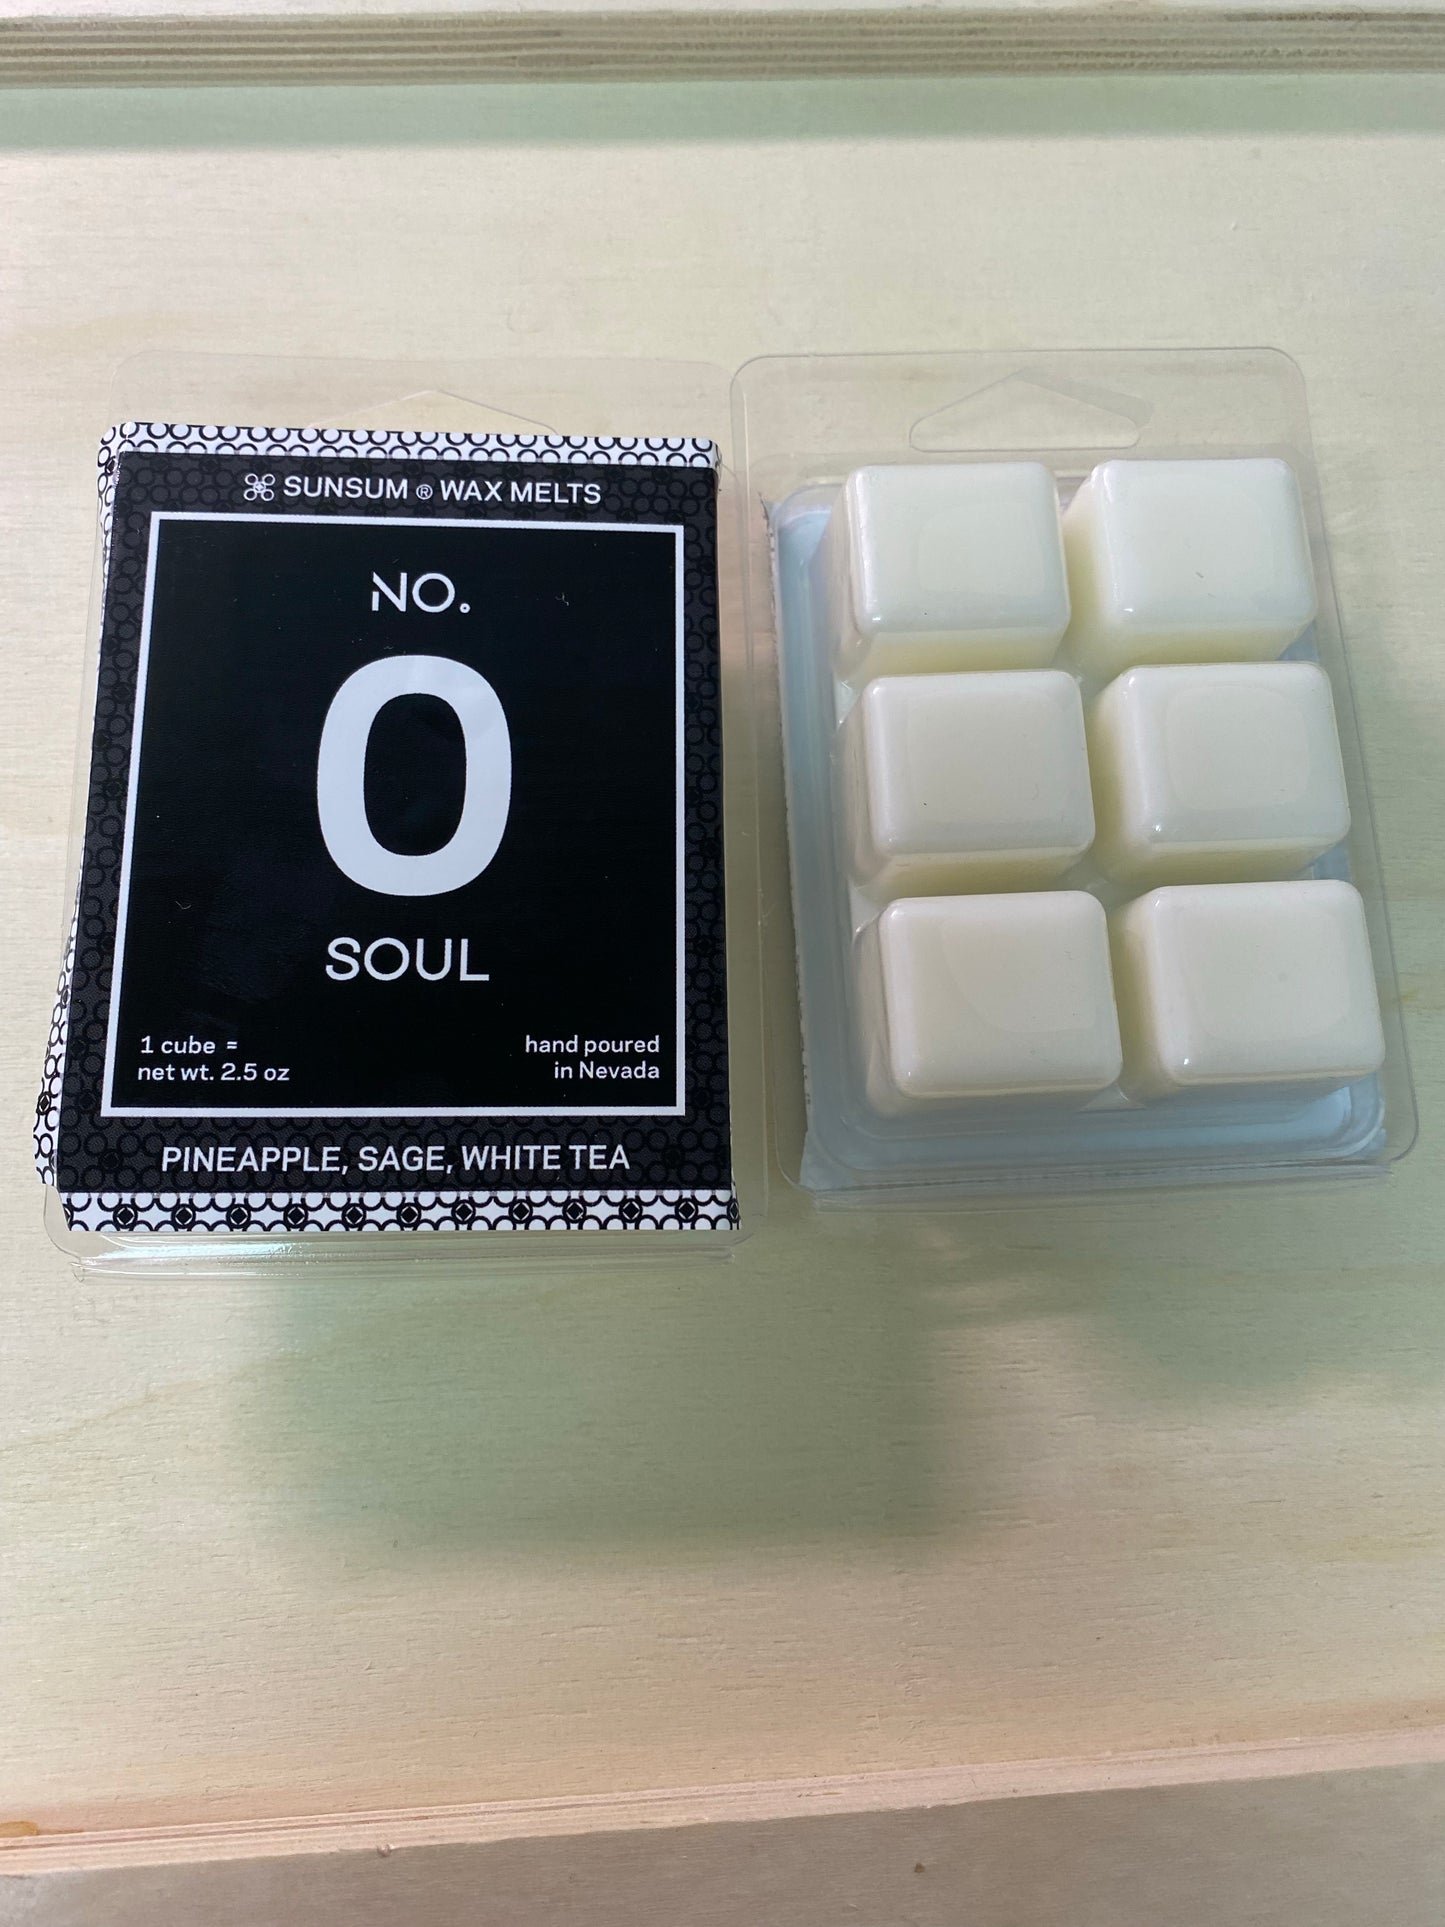 No. 0 - Soul, Pineapple, Sage, White Tea (wax melts)